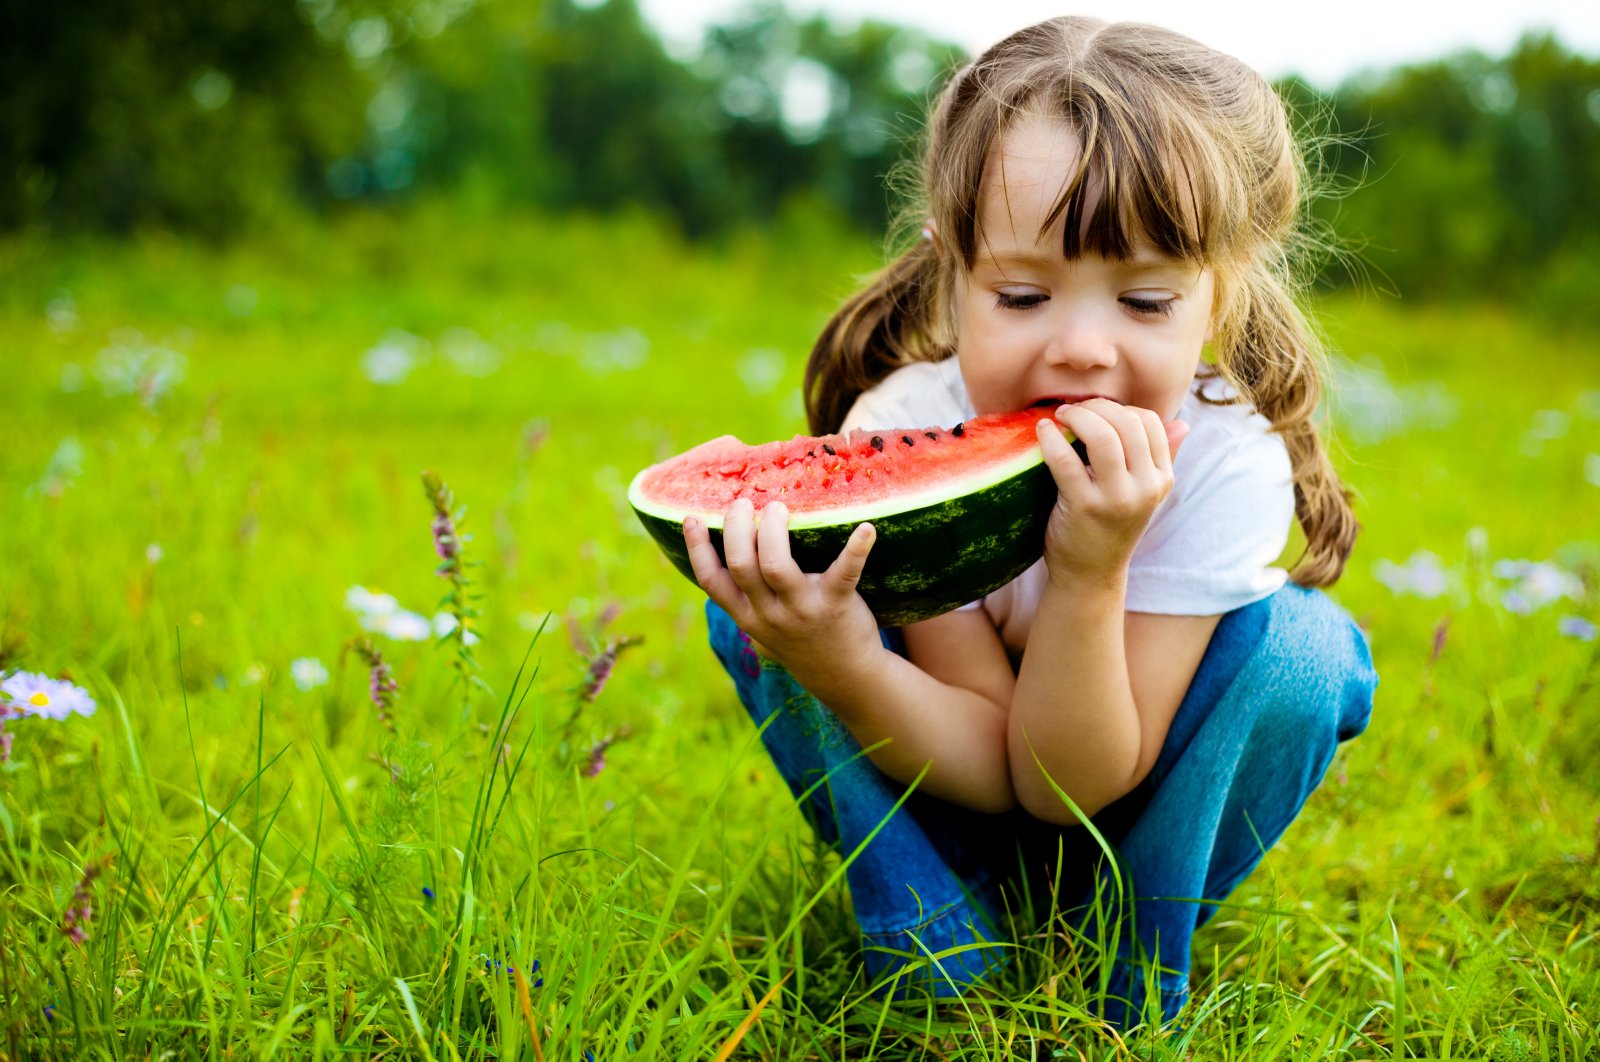 Semakin sehat makanannya, semakin bahagia anak itu: Studi menunjukkan